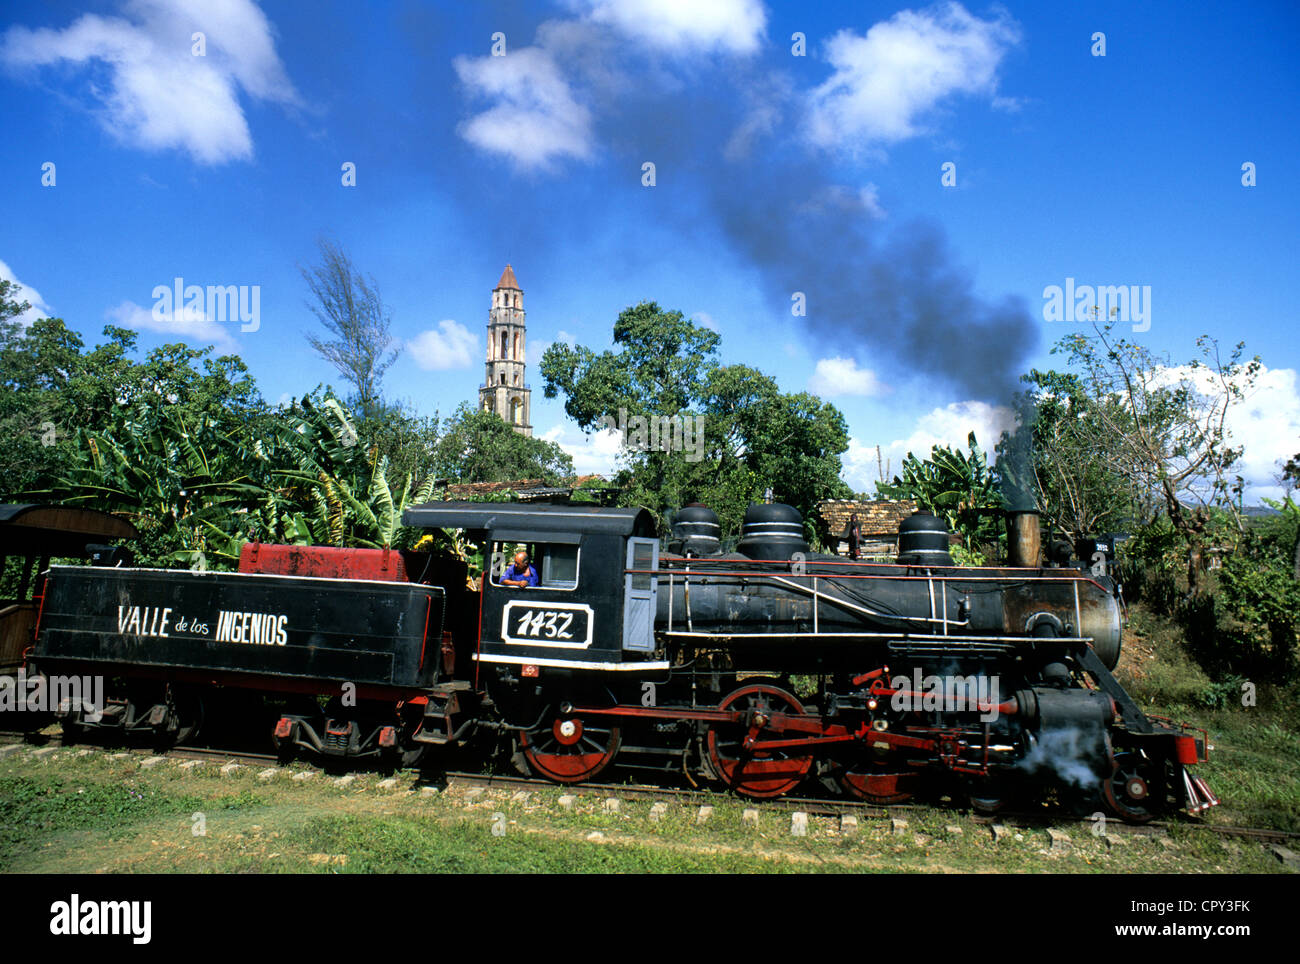 Cuba Sancti Spiritus Province Manaca Iznaga train à vapeur dans la vallée  de Los Ingenios passant devant l'ancienne Hacienda Stock Photo - Alamy